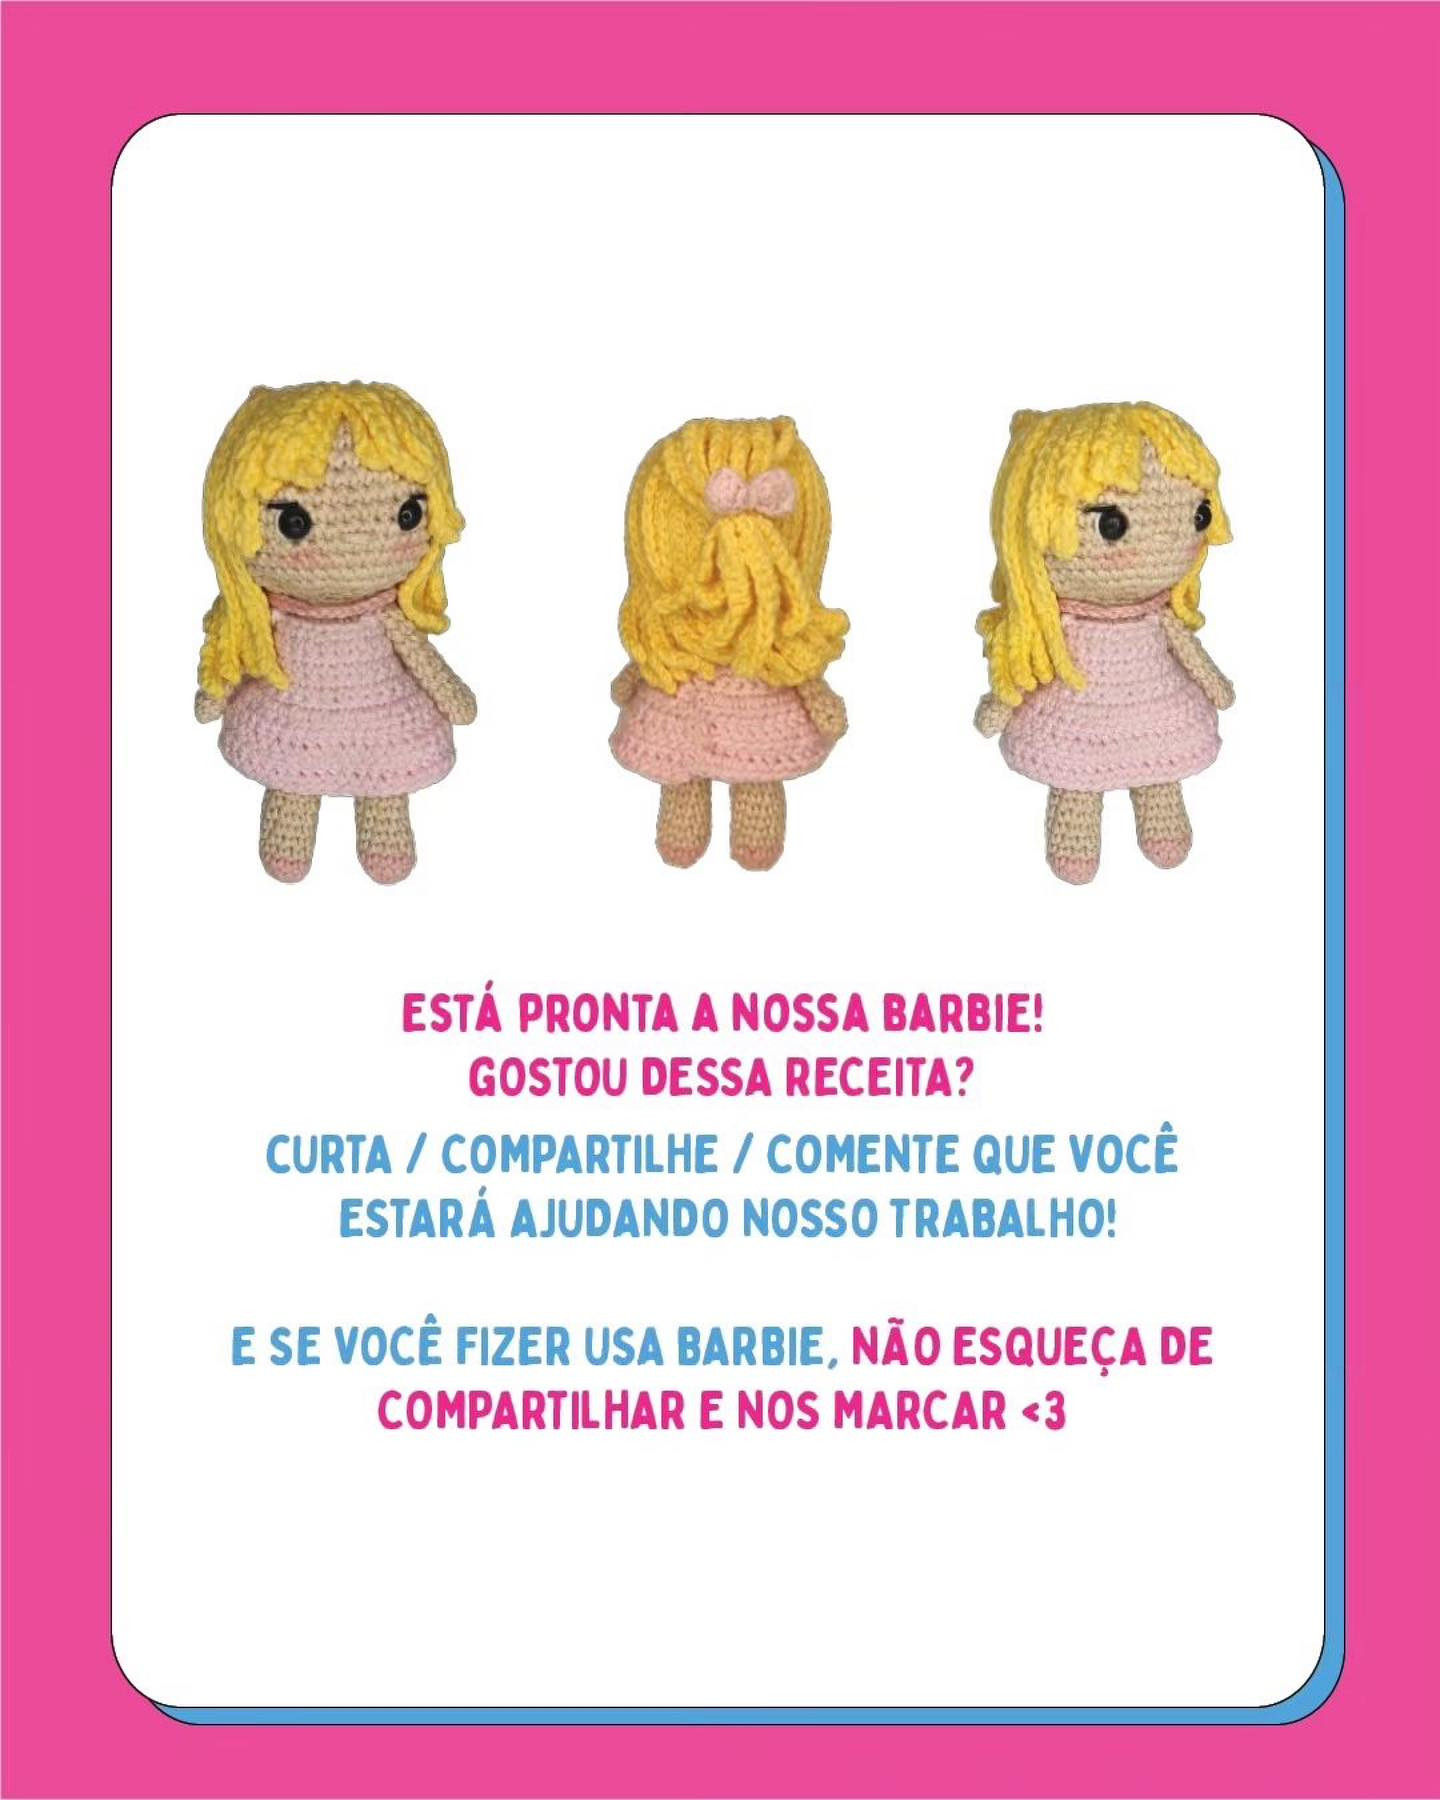 blonde baby girl doll, wearing pink dress, barbie crochet pattern